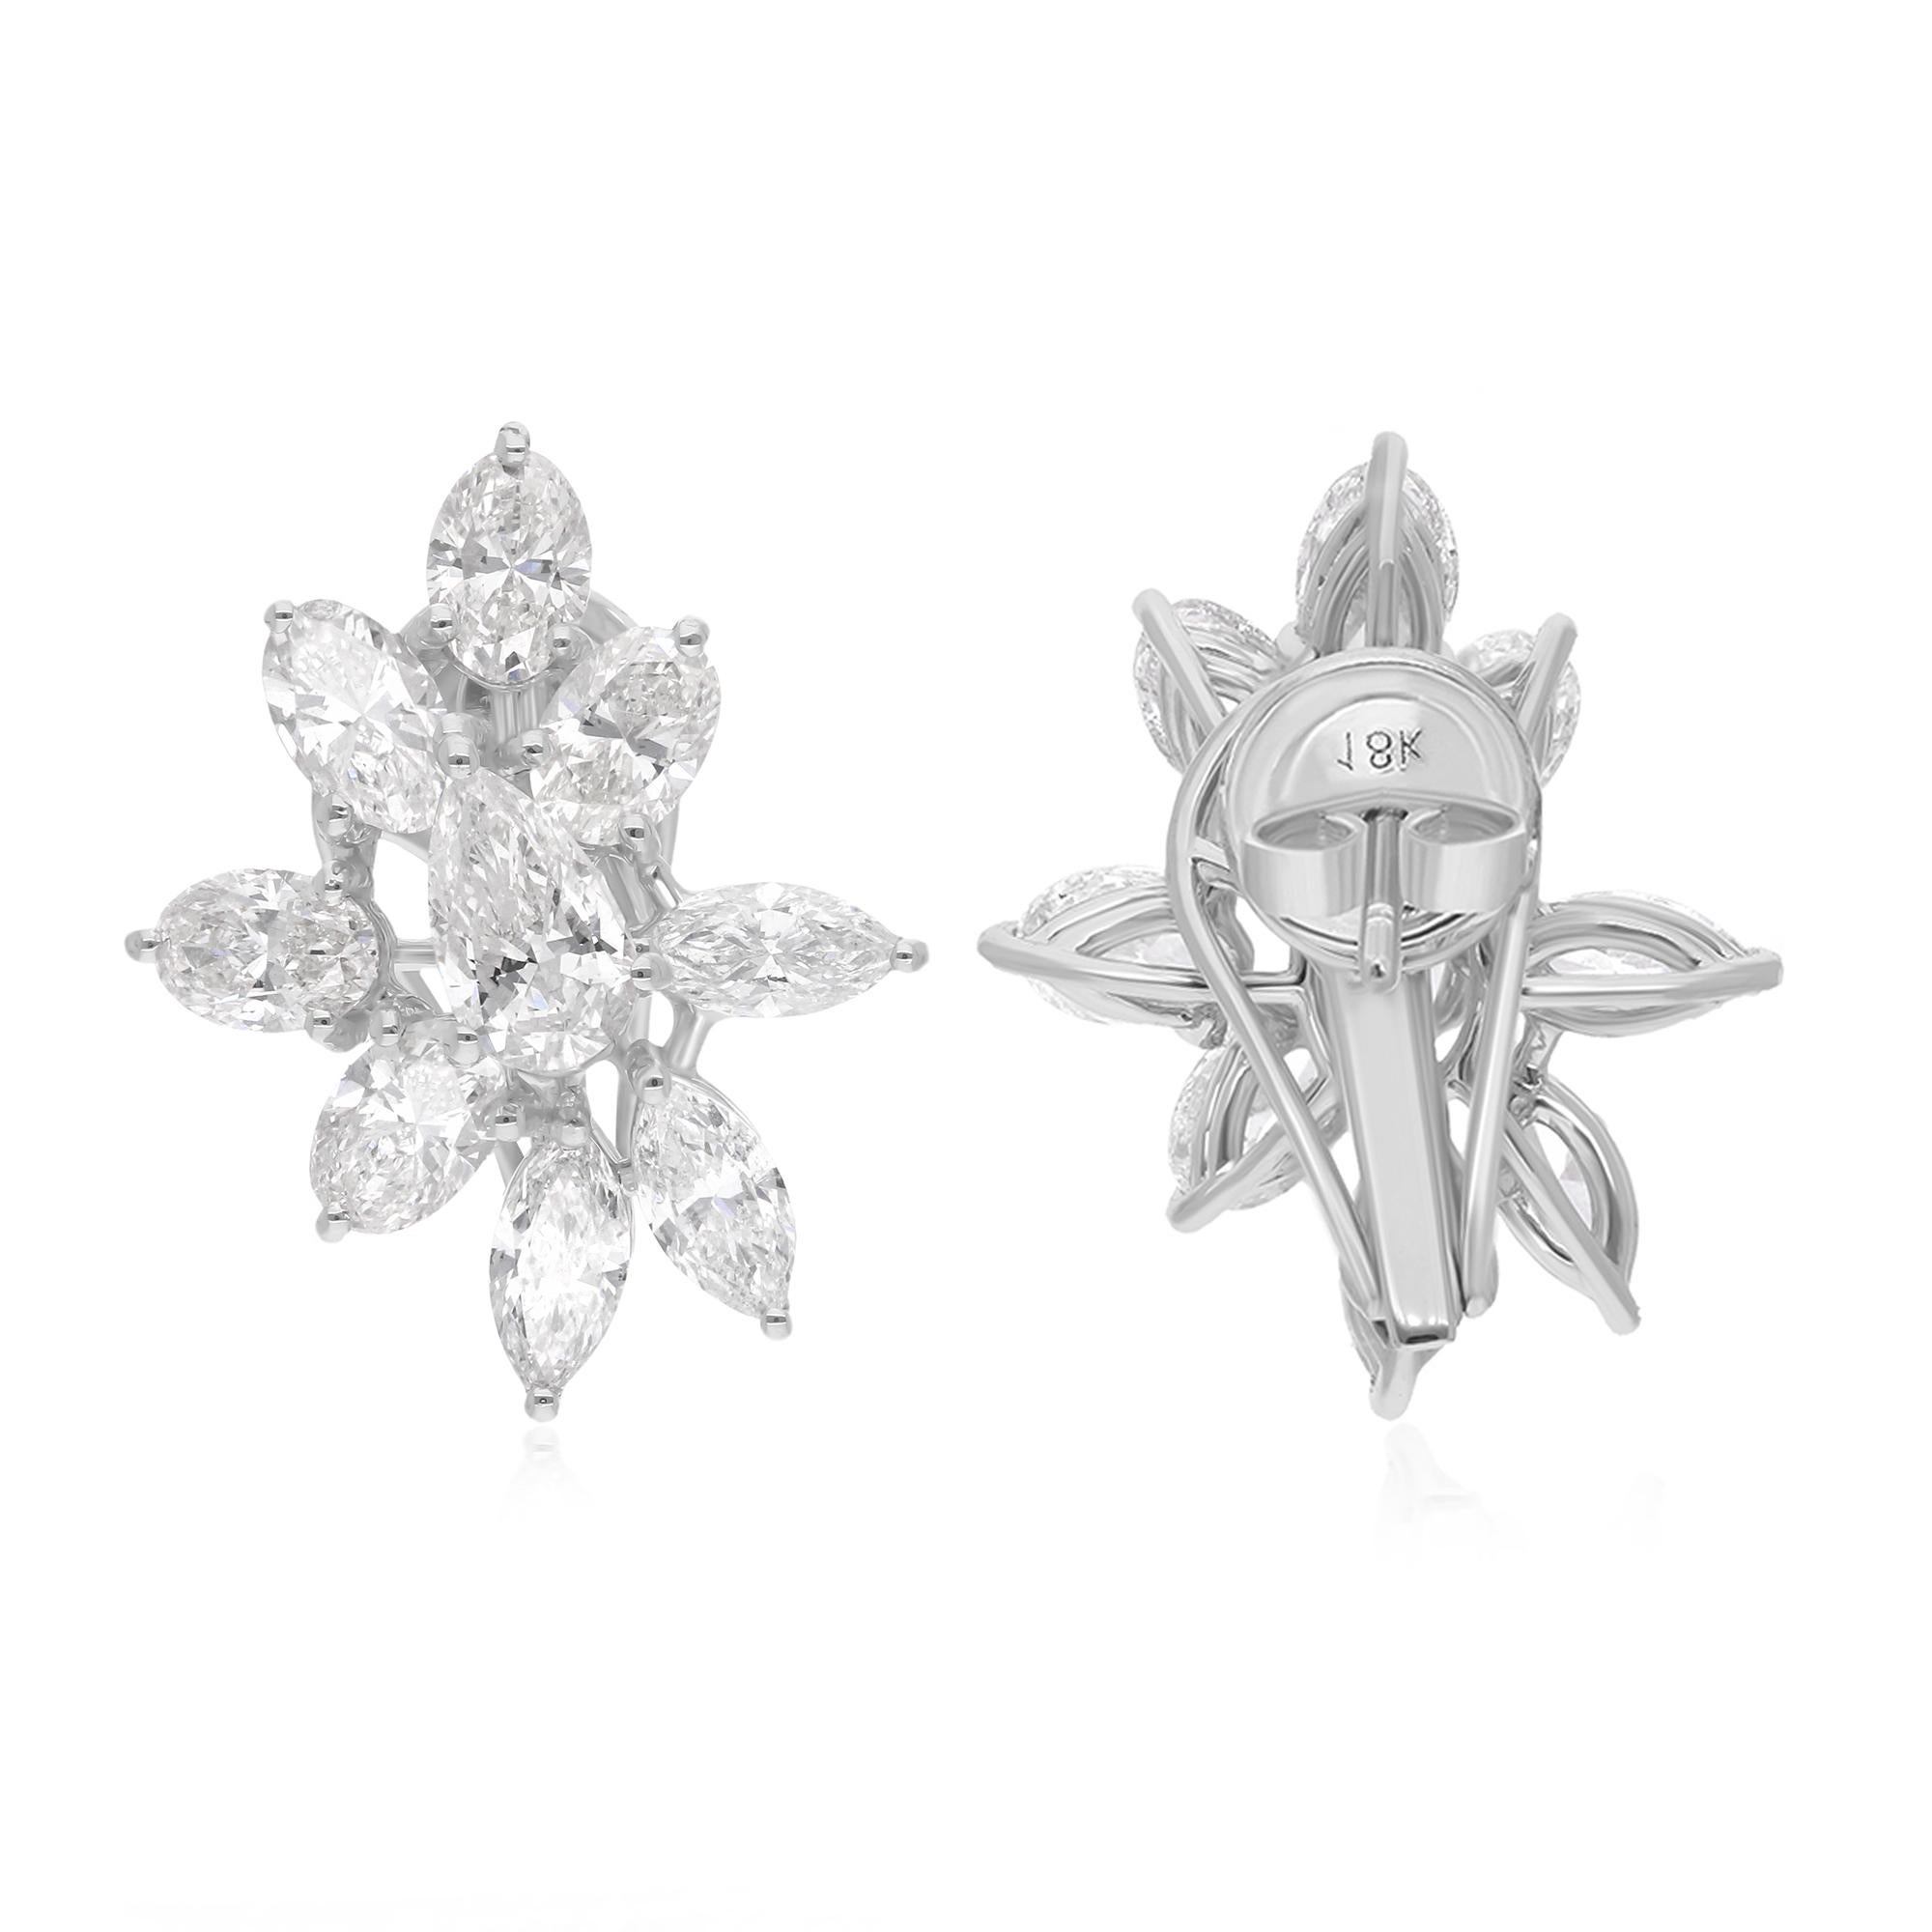 Jeder Ohrring ist mit einem atemberaubenden ovalen Marquise-Diamanten besetzt, der aufgrund seiner außergewöhnlichen Qualität und Brillanz sorgfältig ausgewählt wurde. Mit einem Gesamtkaratgewicht von 5 Karat strahlen diese Diamanten ein